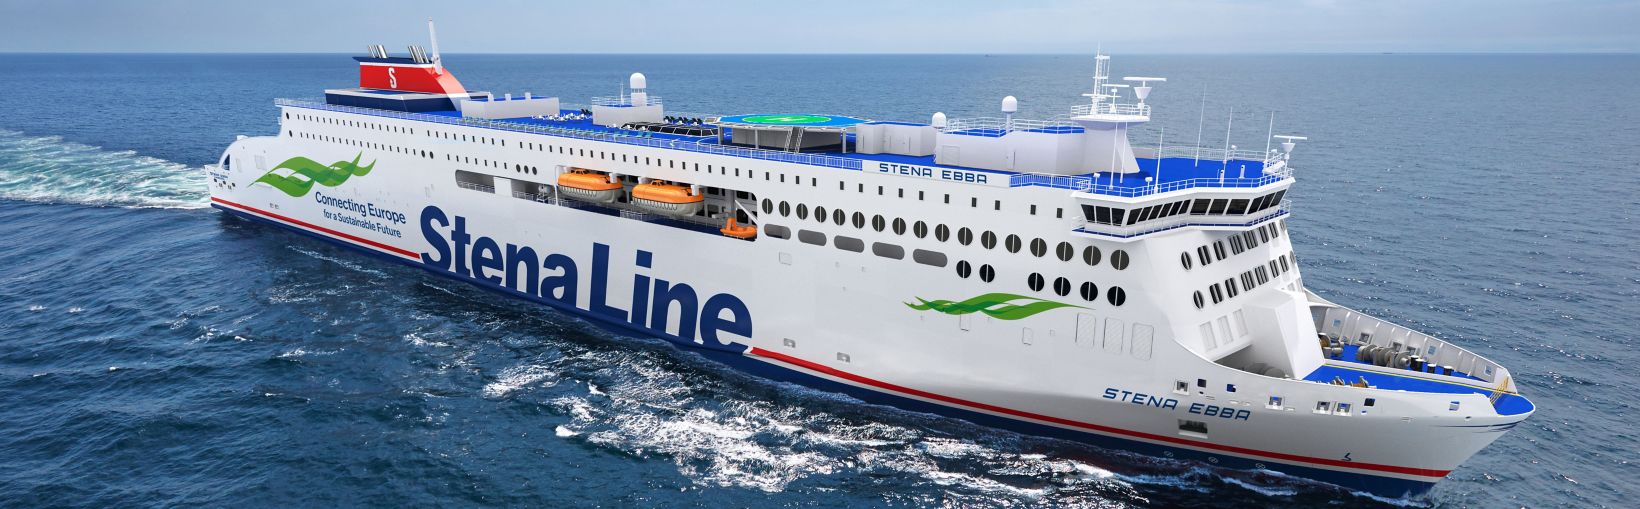 Stena Ebba e-flexer ferry at sea